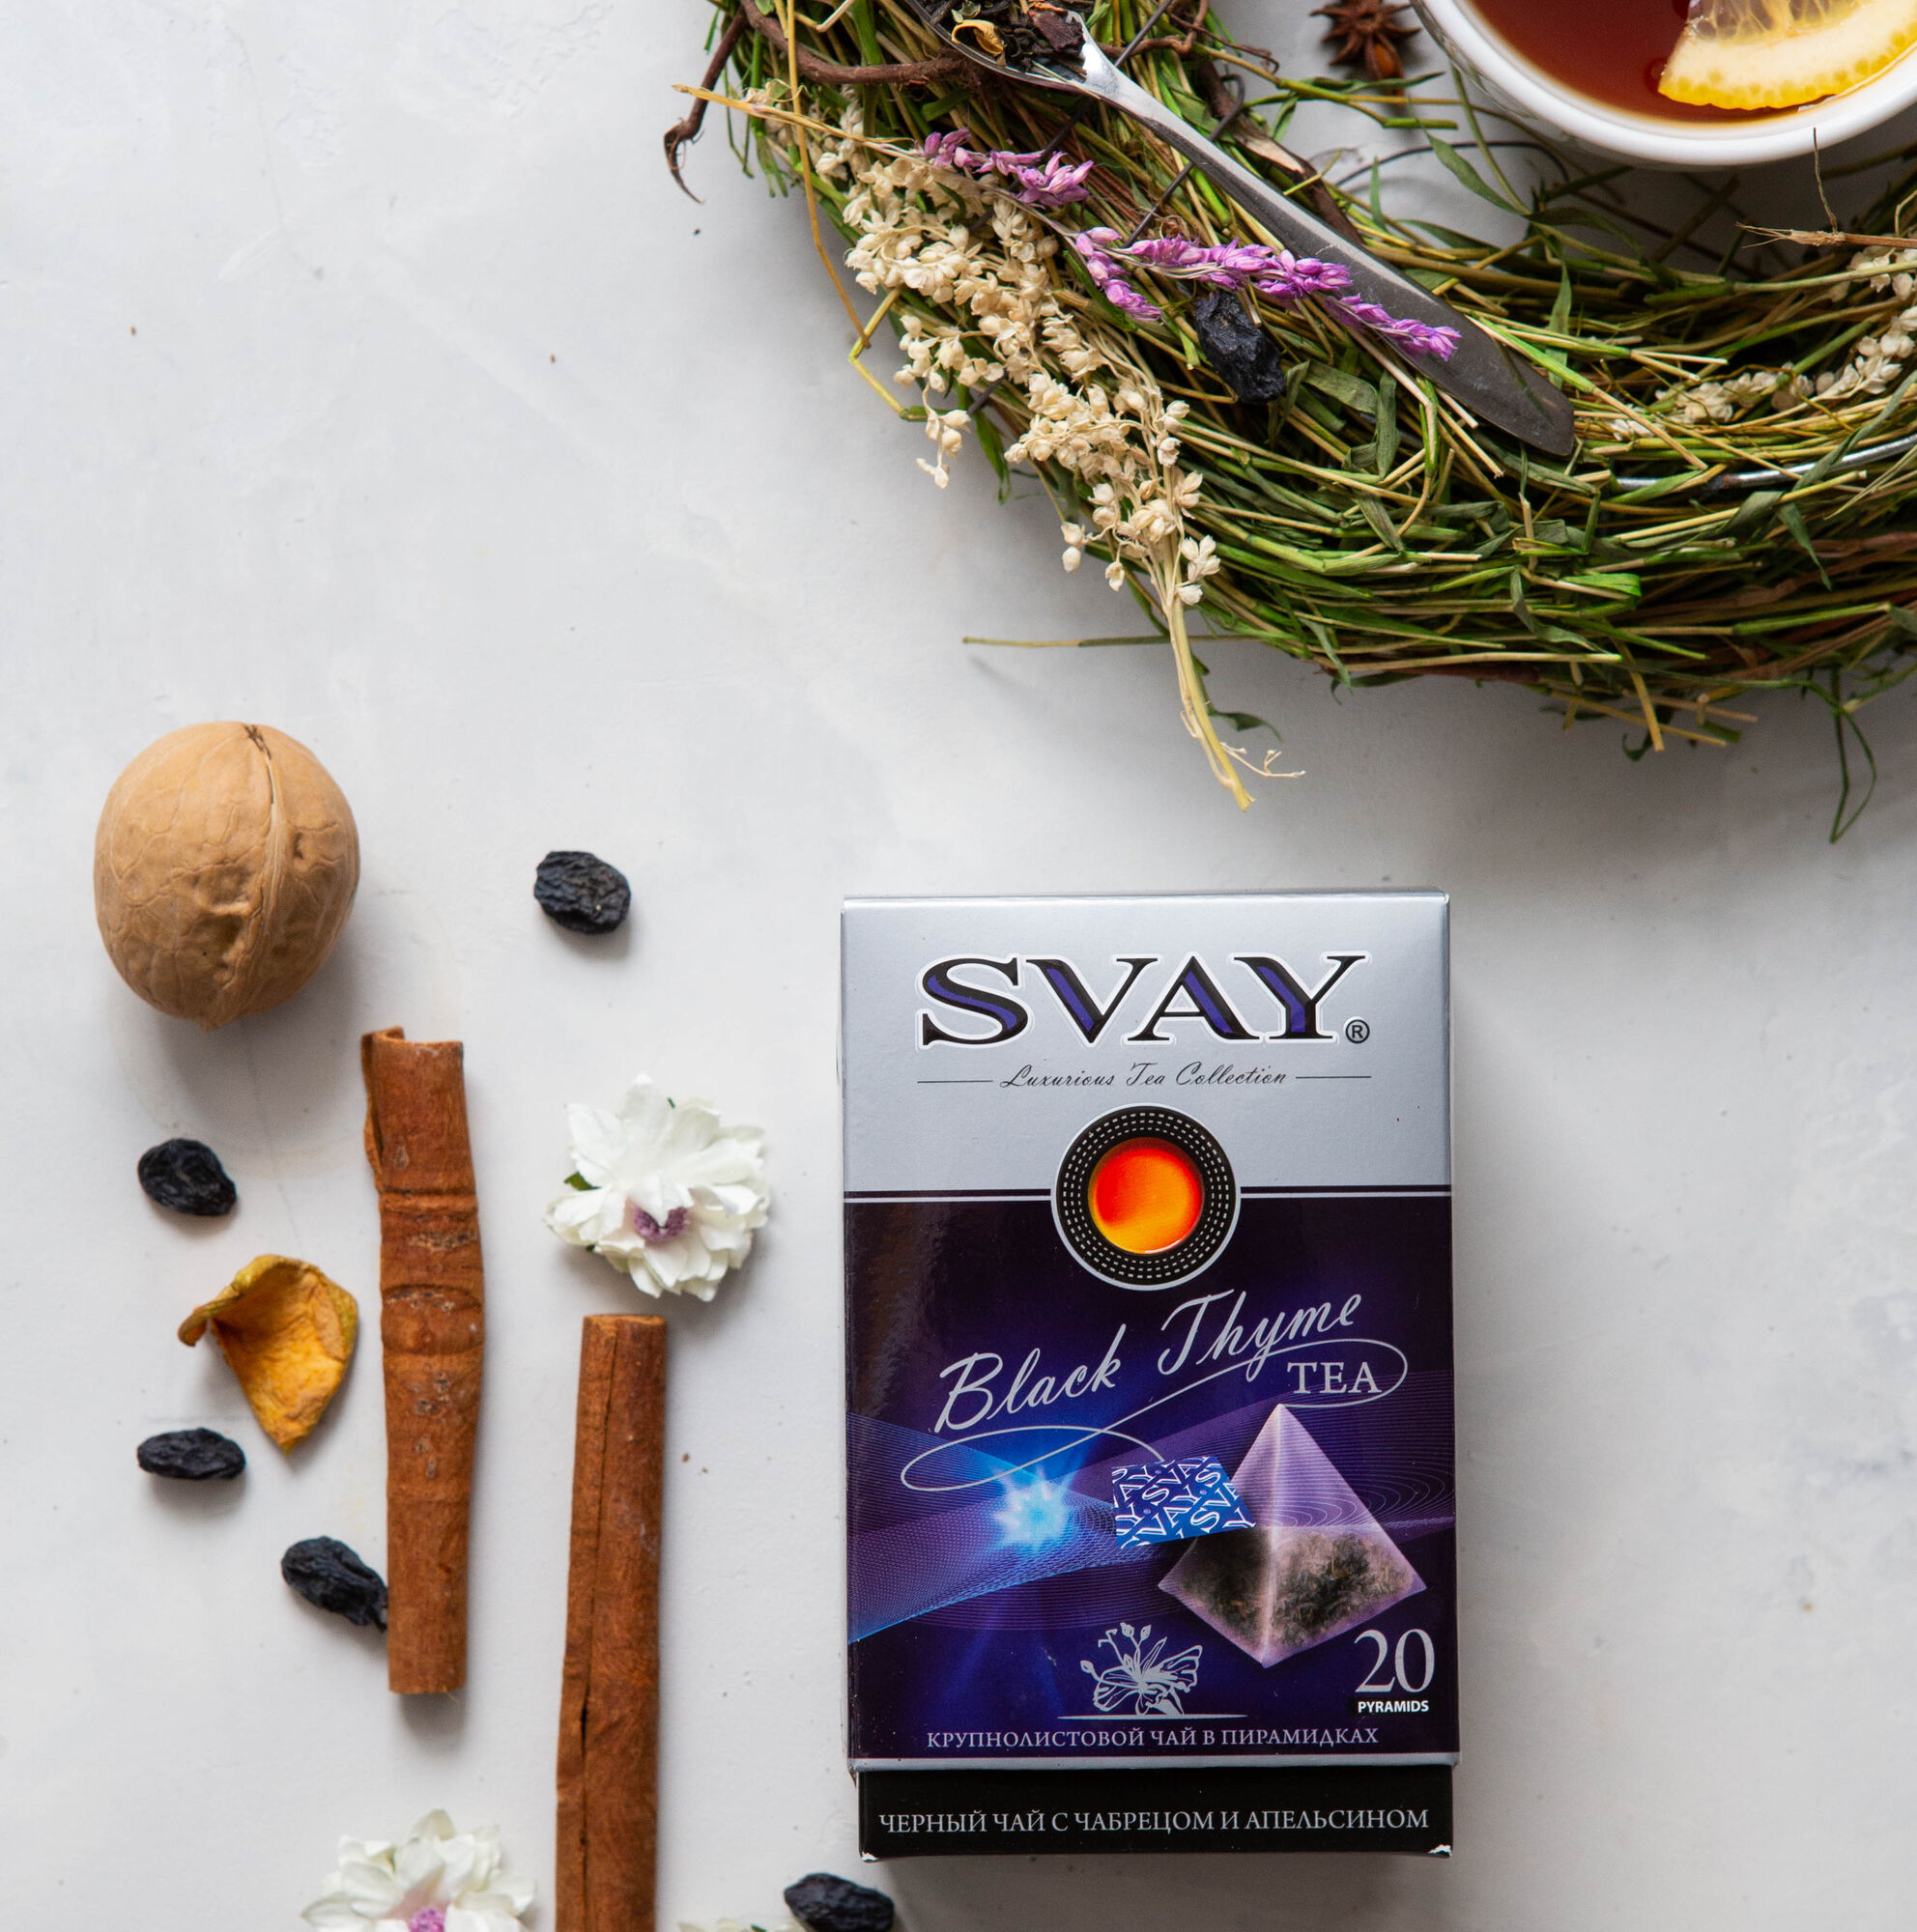 Чай СВ-Svay Black Thyme черный 20х2.5 пирамидки (в коробке 12 шт)